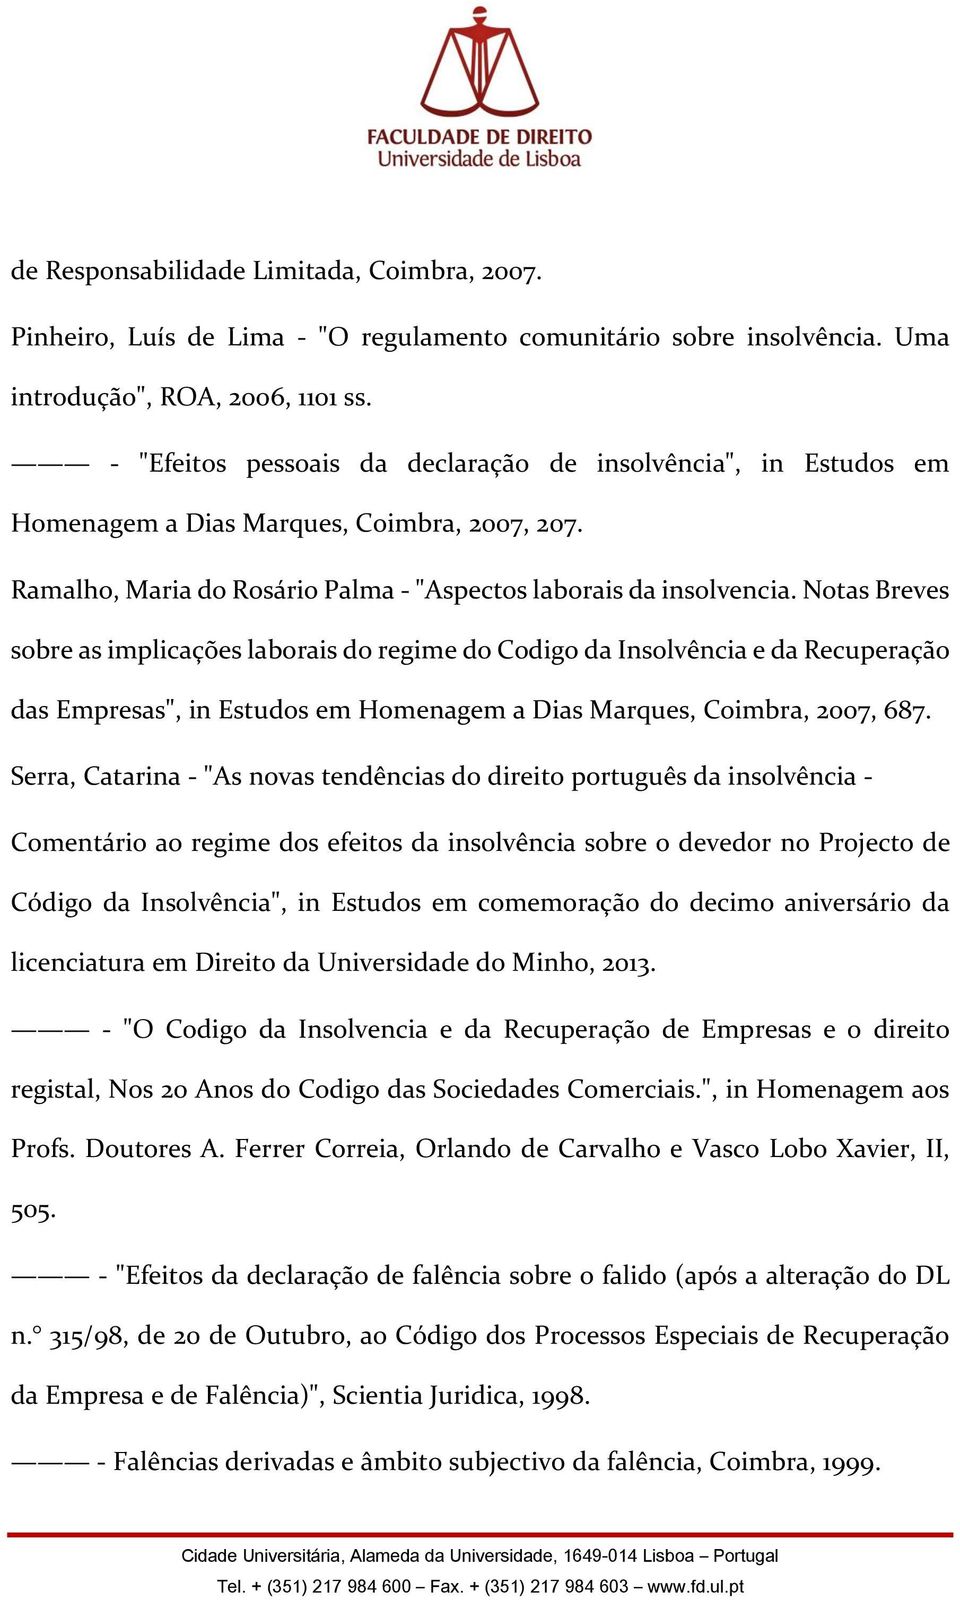 Notas Breves sobre as implicações laborais do regime do Codigo da Insolvência e da Recuperação das Empresas", in Estudos em Homenagem a Dias Marques, Coimbra, 2007, 687.